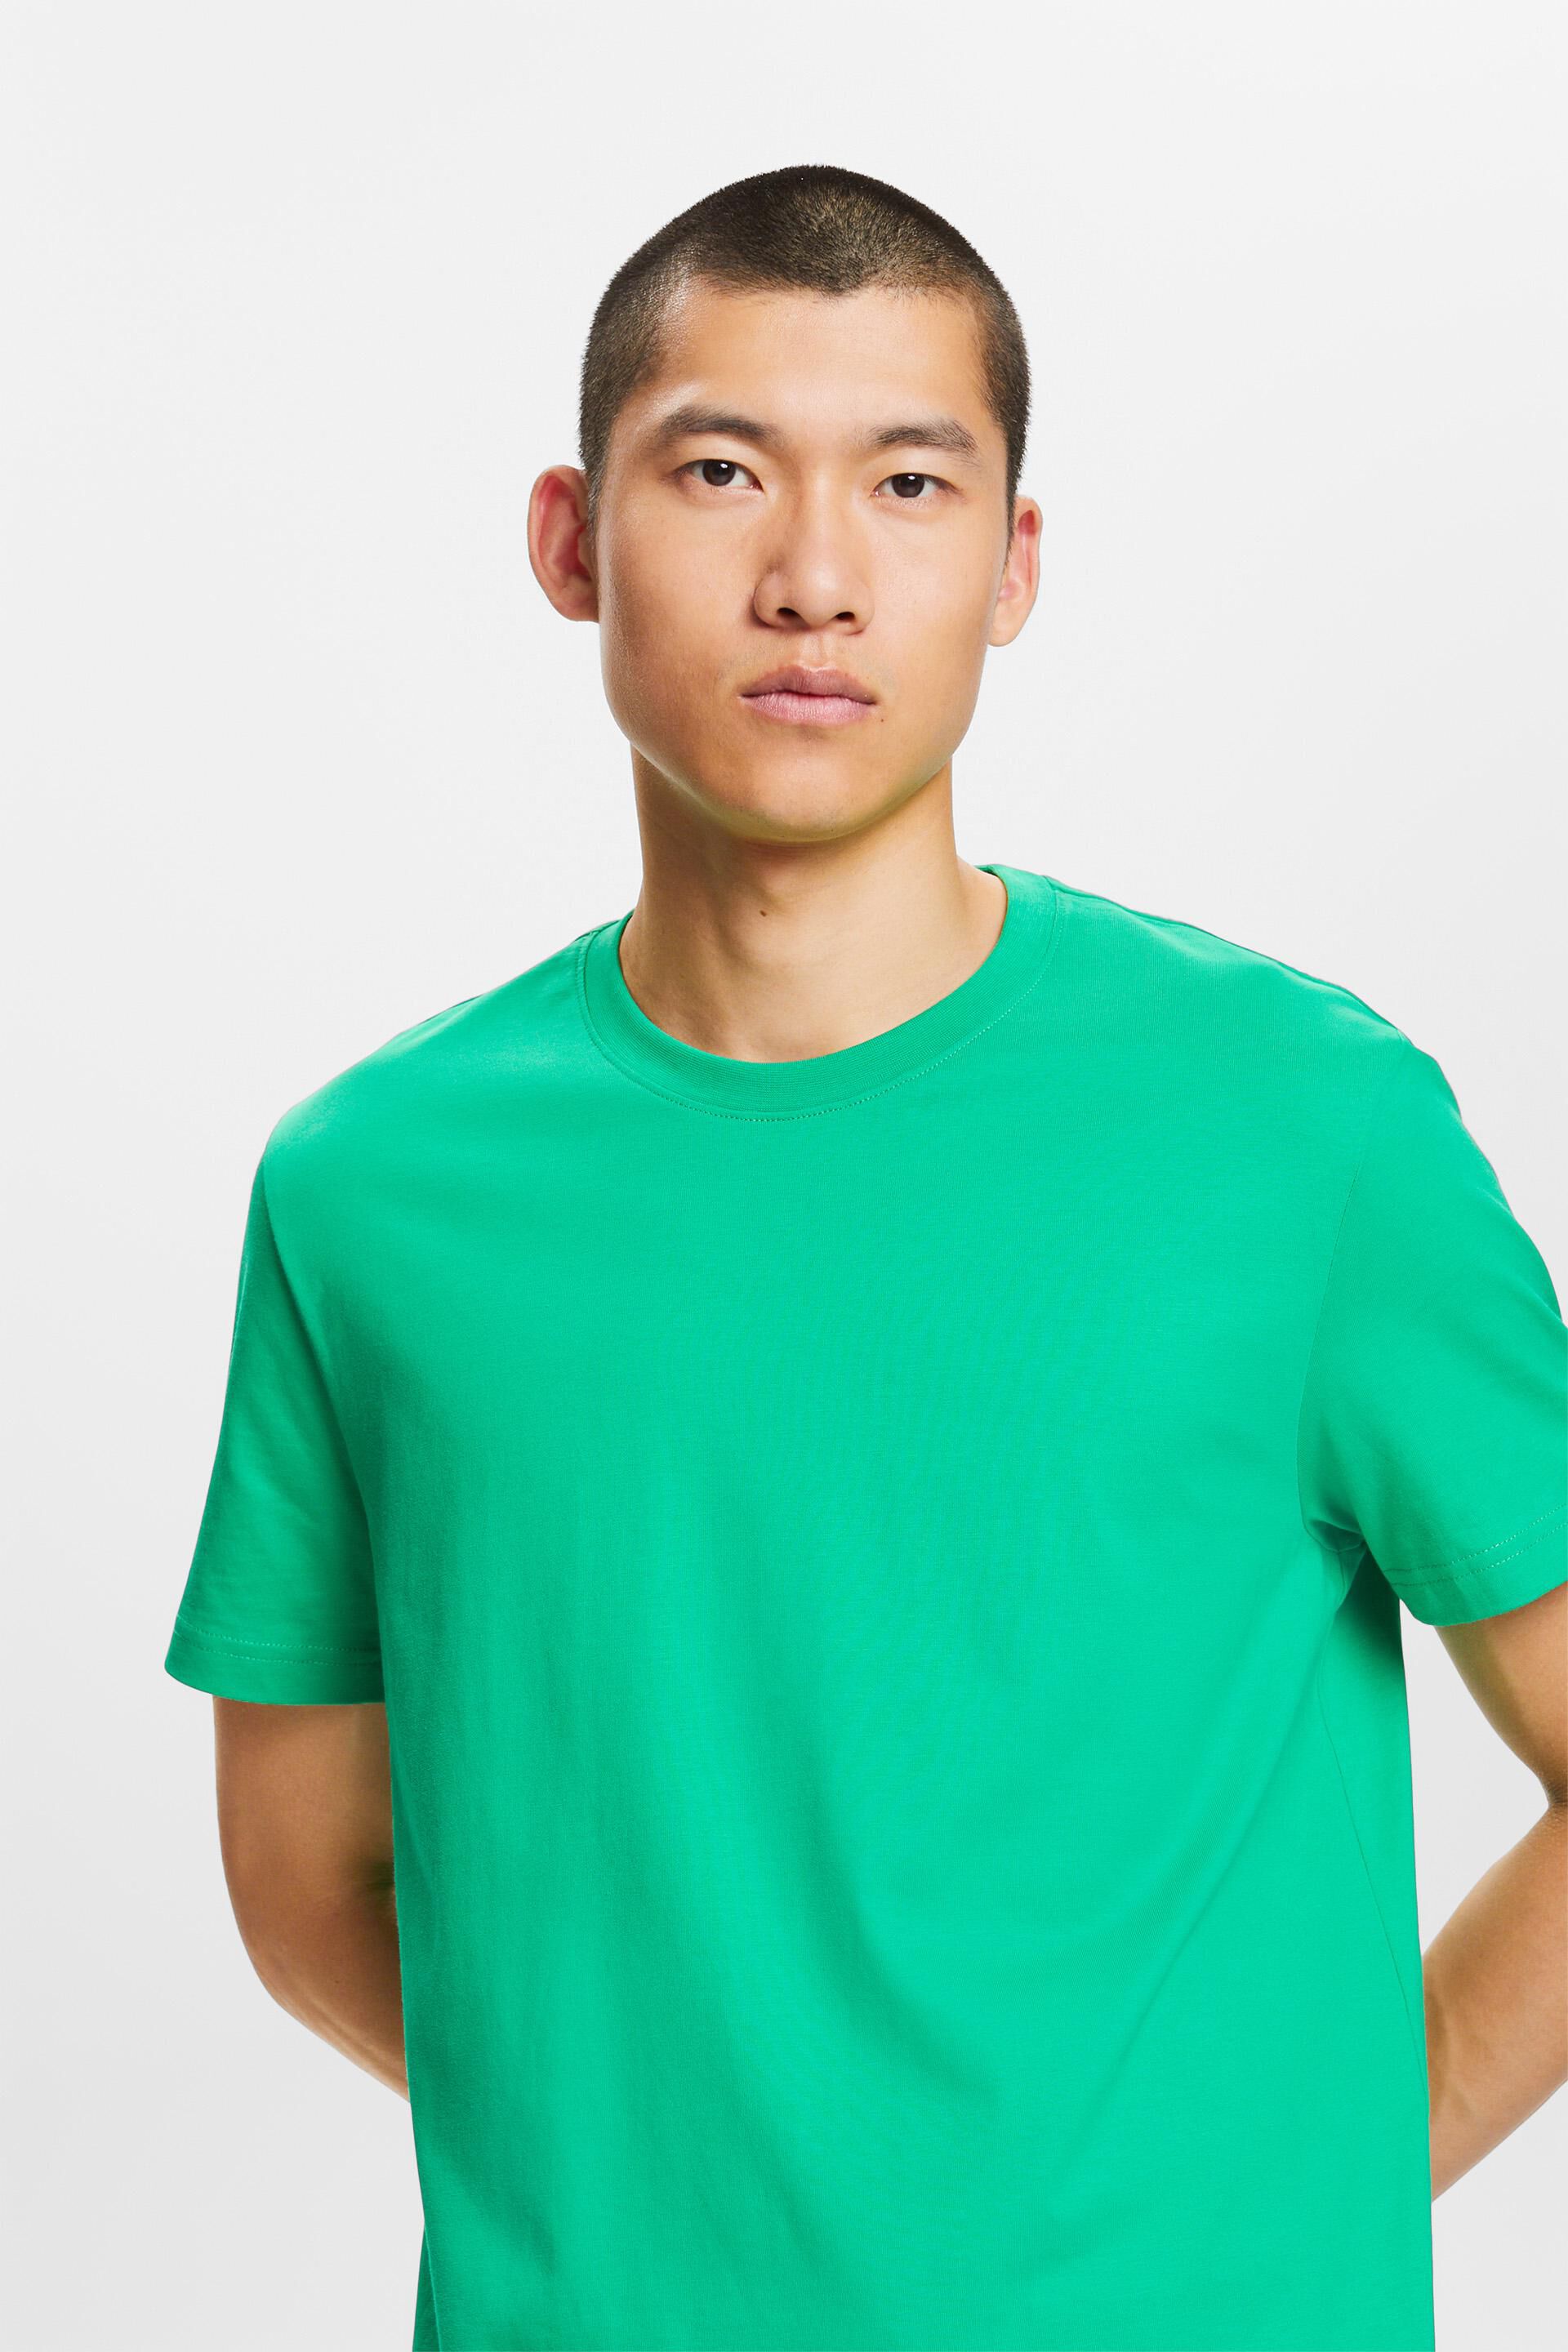 Esprit Rundhalsausschnitt, mit % Jersey-T-Shirt Baumwolle 100